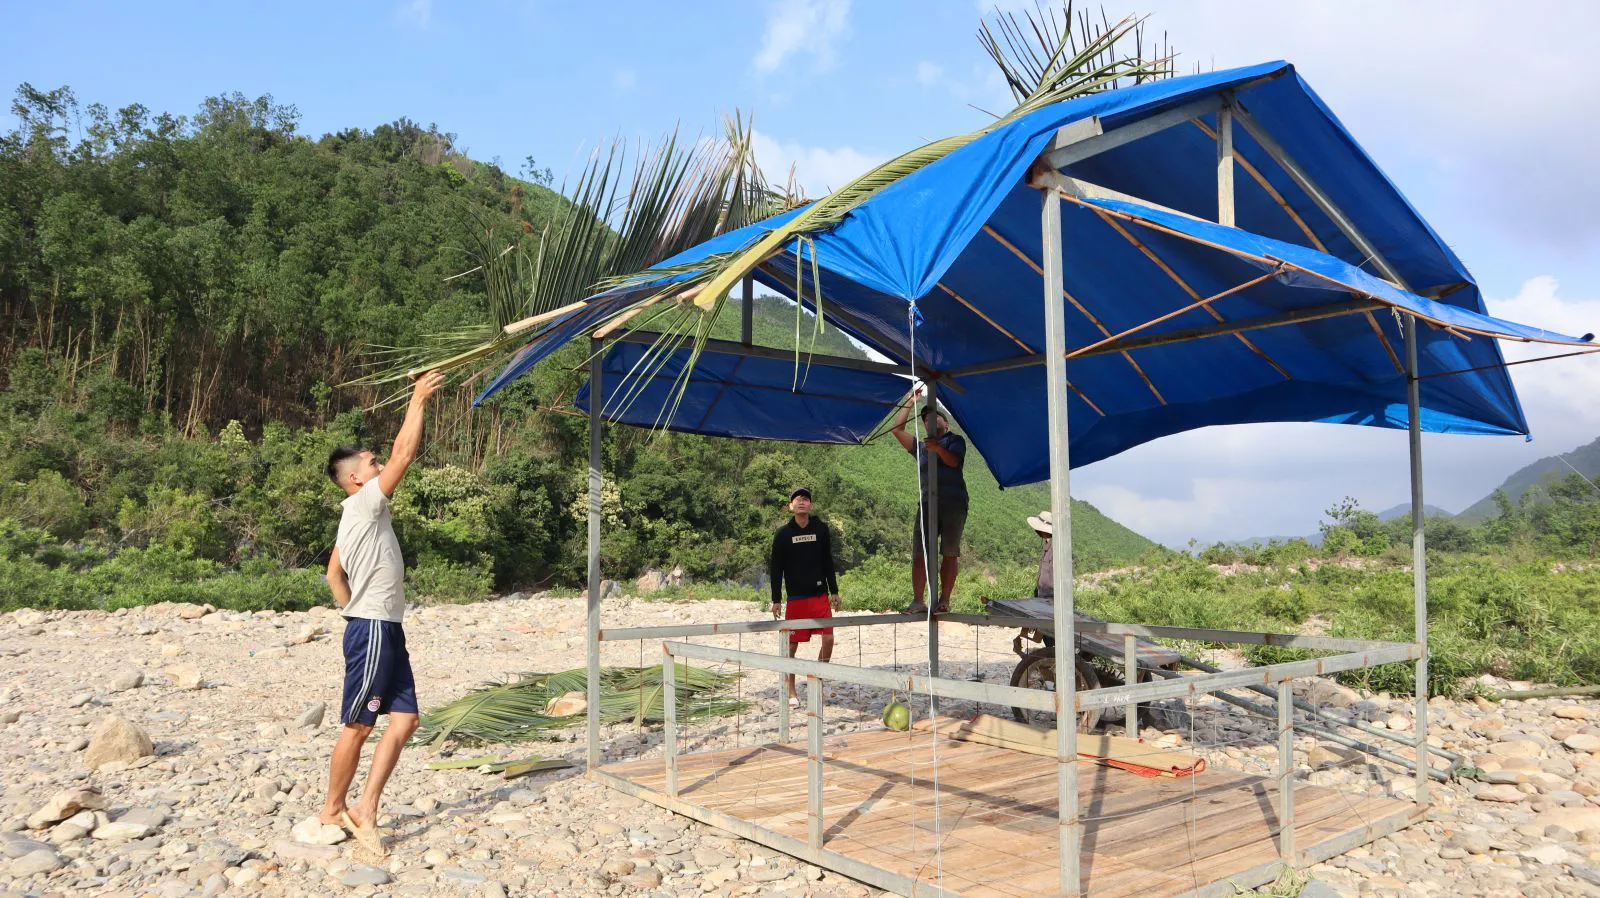 Người dân tại hai thôn Giàn Bí và Tà Lang xây dựng các láng trại phục vụ du lịch ở ven sông Cu Đê.